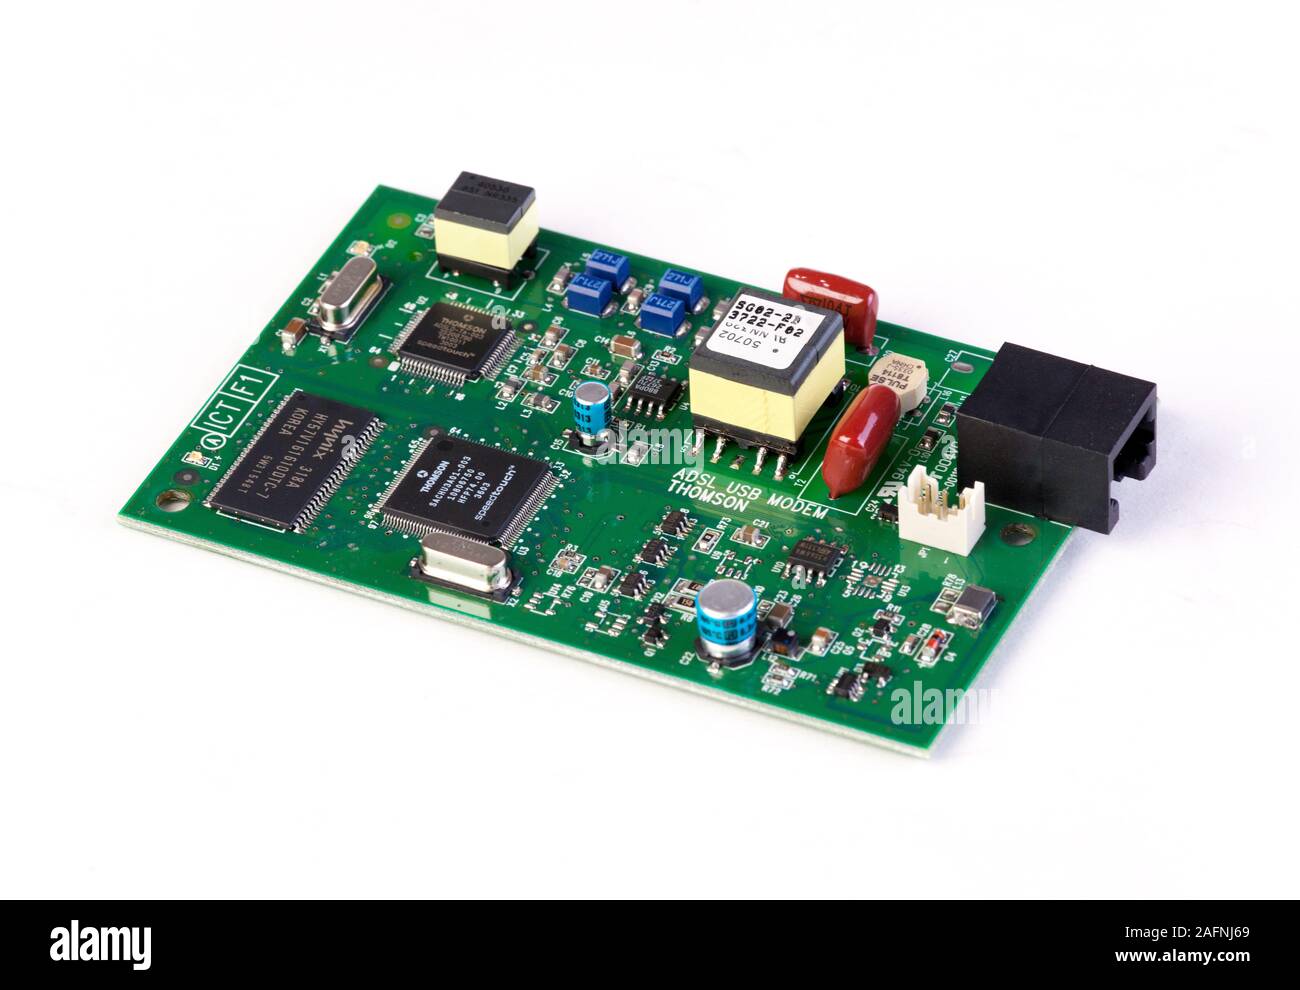 componentes electrónicos en la placa de circuitos de montaje superficial Foto de stock